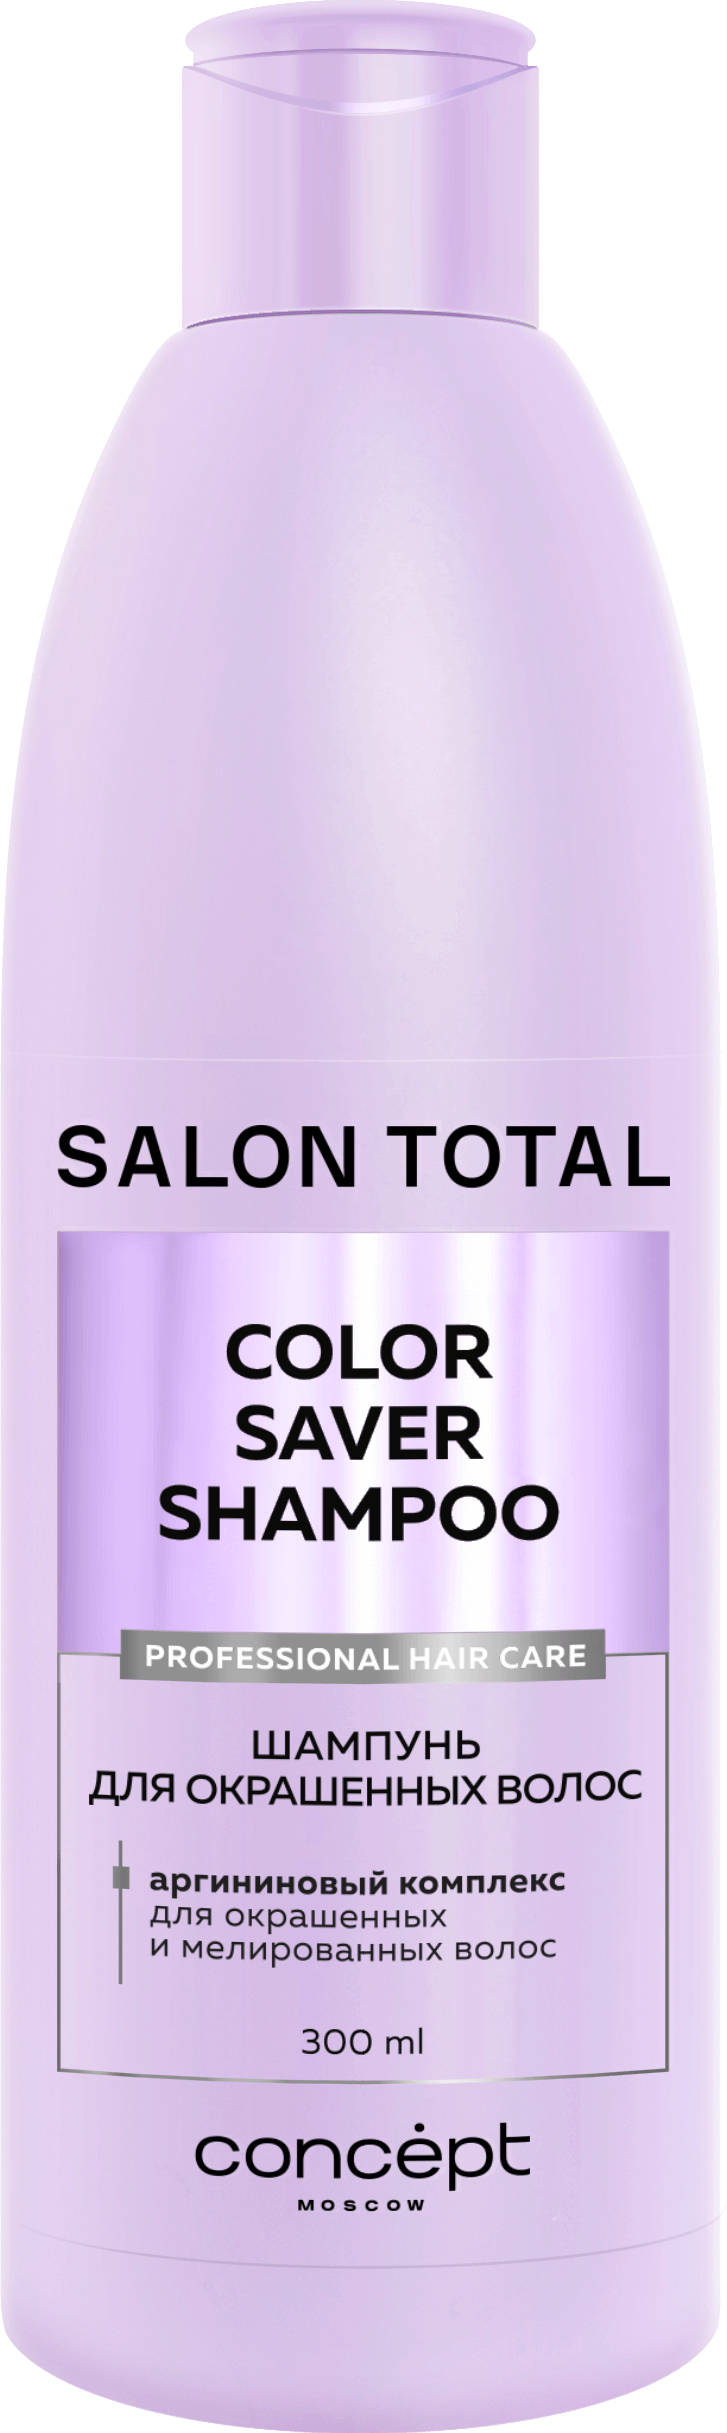 Salon Total Шампунь для окрашеных волос 300 мл